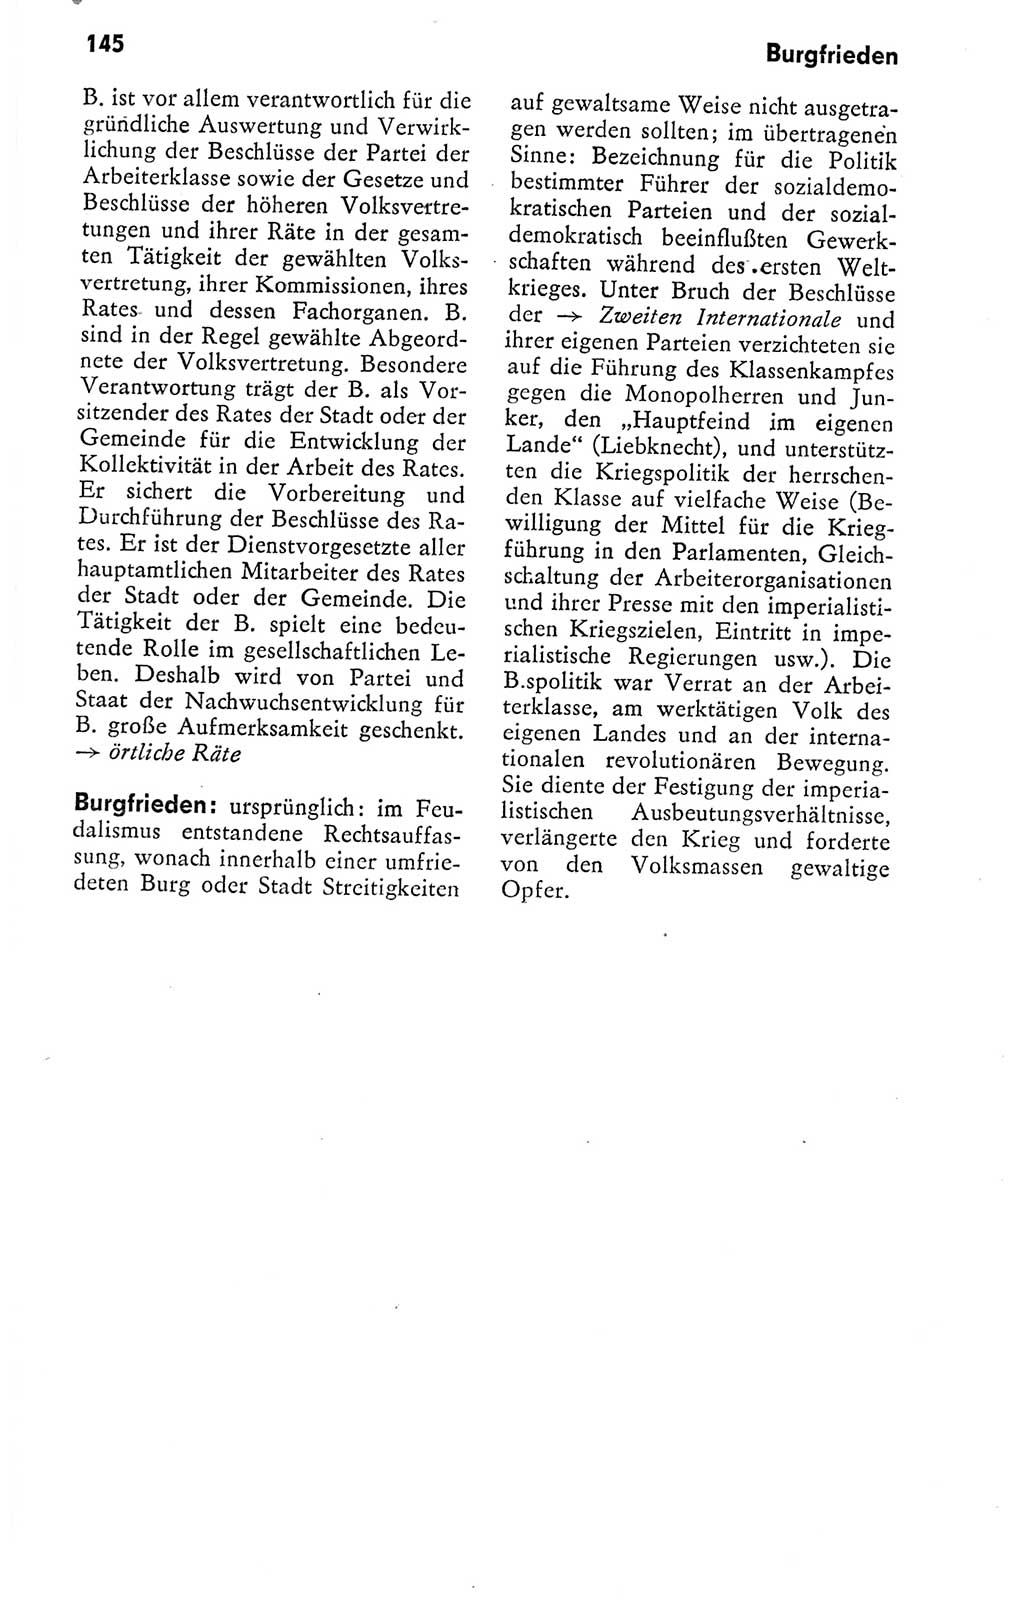 Kleines politisches Wörterbuch [Deutsche Demokratische Republik (DDR)] 1978, Seite 145 (Kl. pol. Wb. DDR 1978, S. 145)